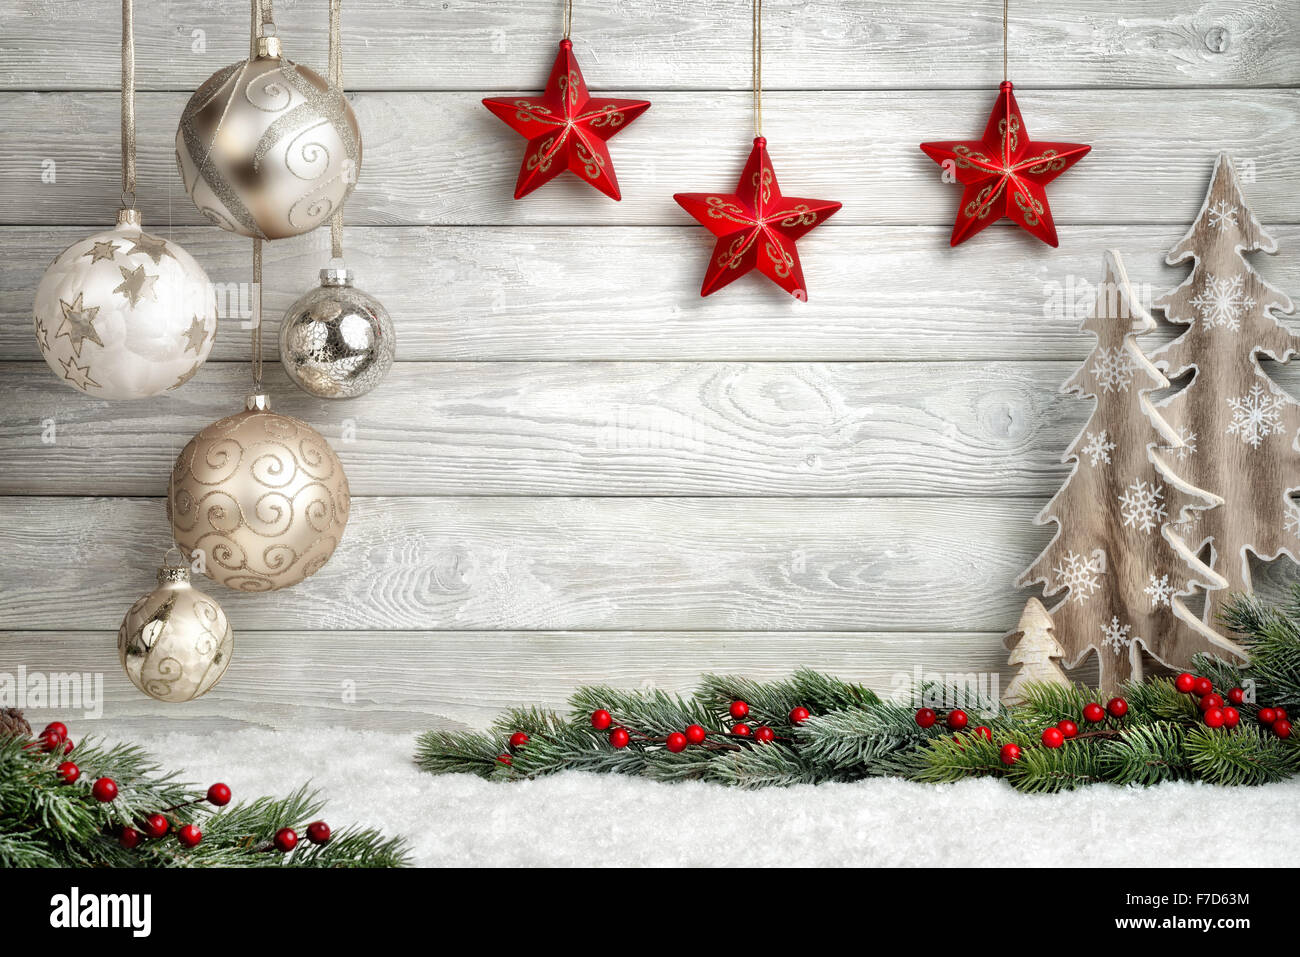 Weihnachten Hintergrund in hellen Holz-Stil, modern, einfach und elegant, mit einer Grenze von Tannenzweigen, Sterne, Kugeln, Zierpflanze Stockfoto